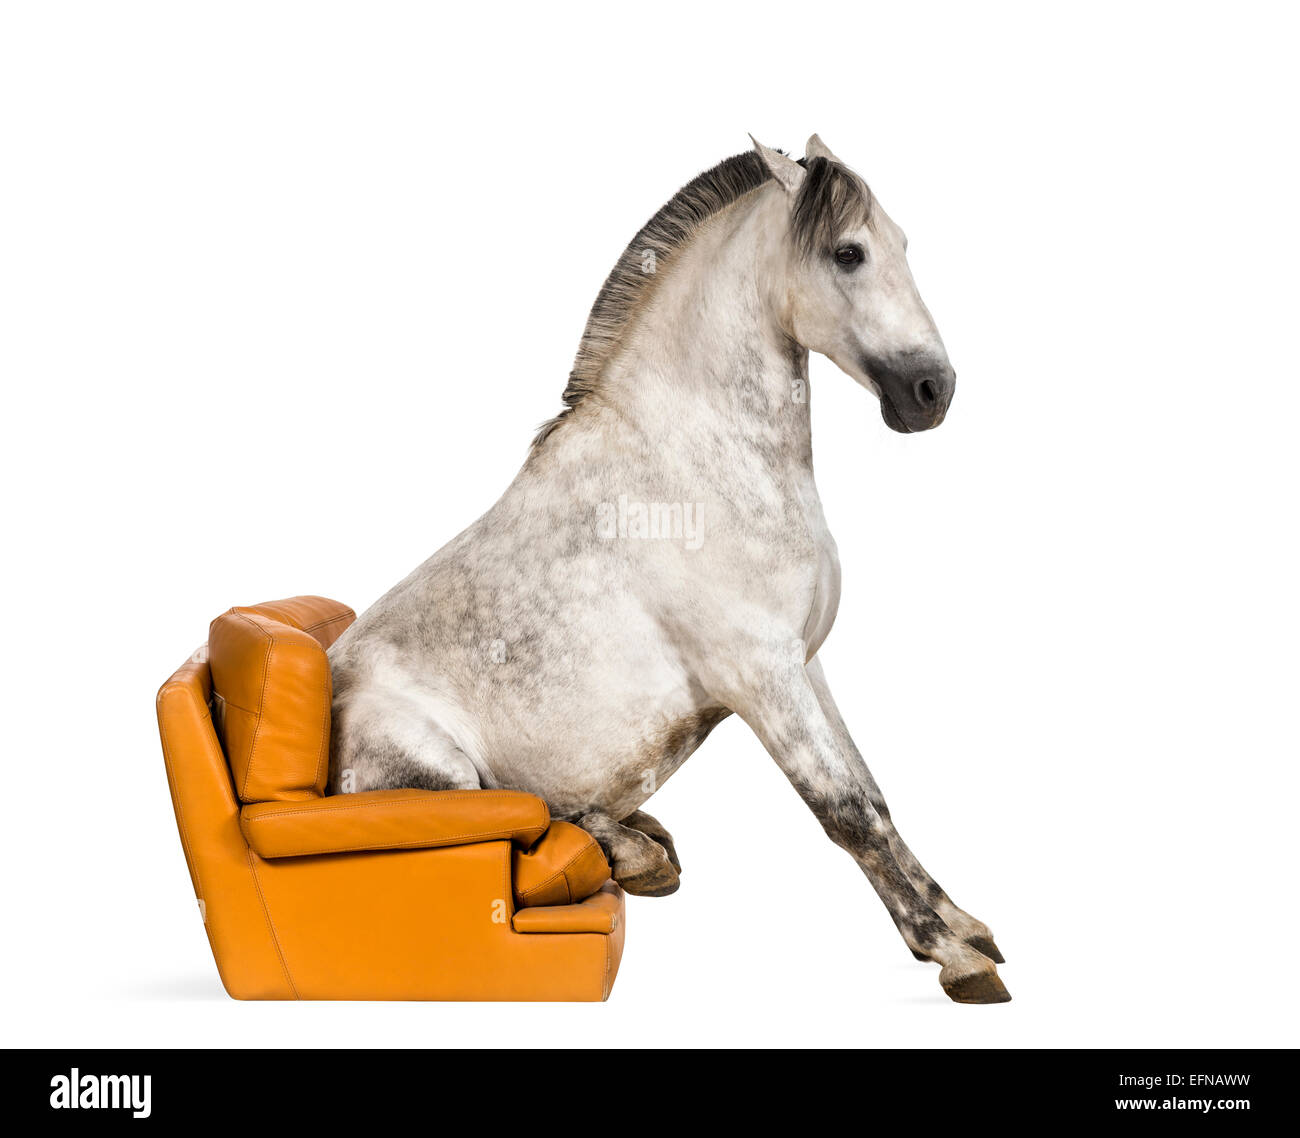 Cheval andalou assis sur un fauteuil à l'arrière-plan blanc Banque D'Images